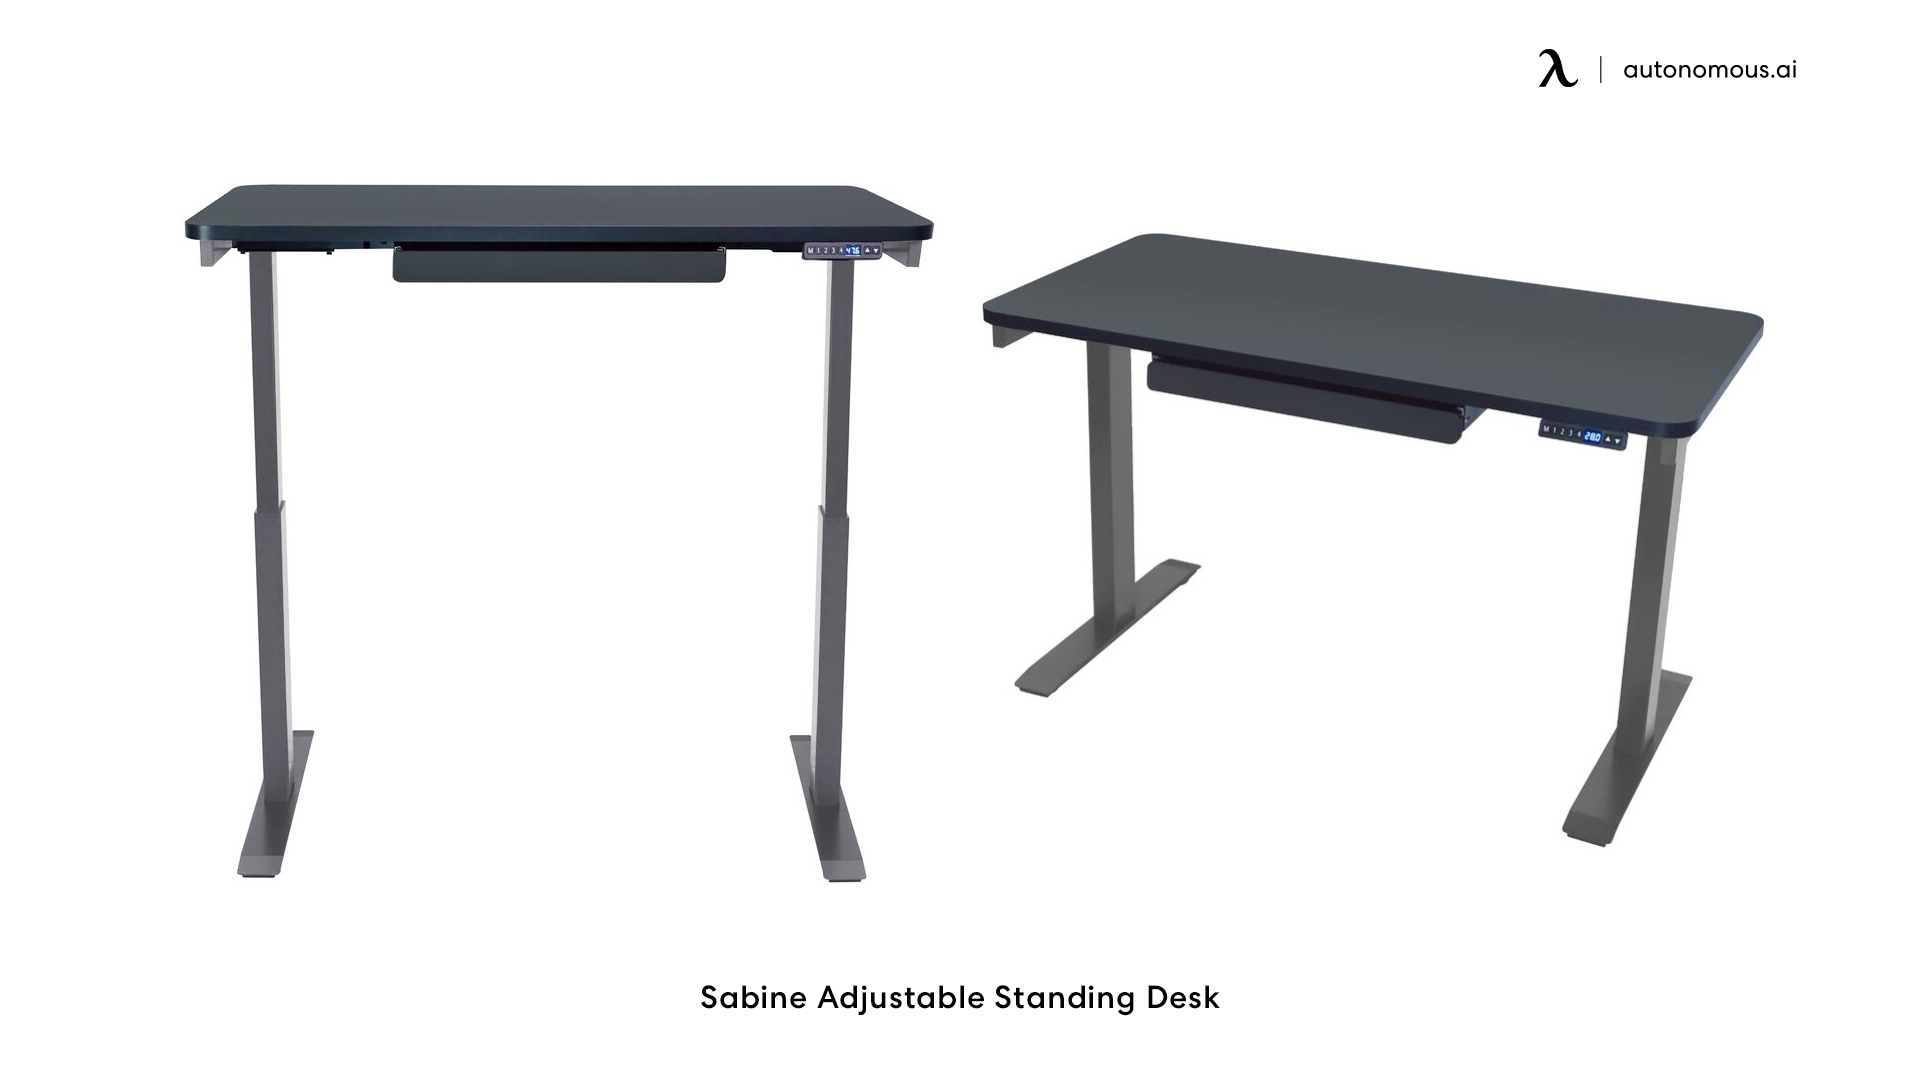 Sabine Adjustable Standing Desk